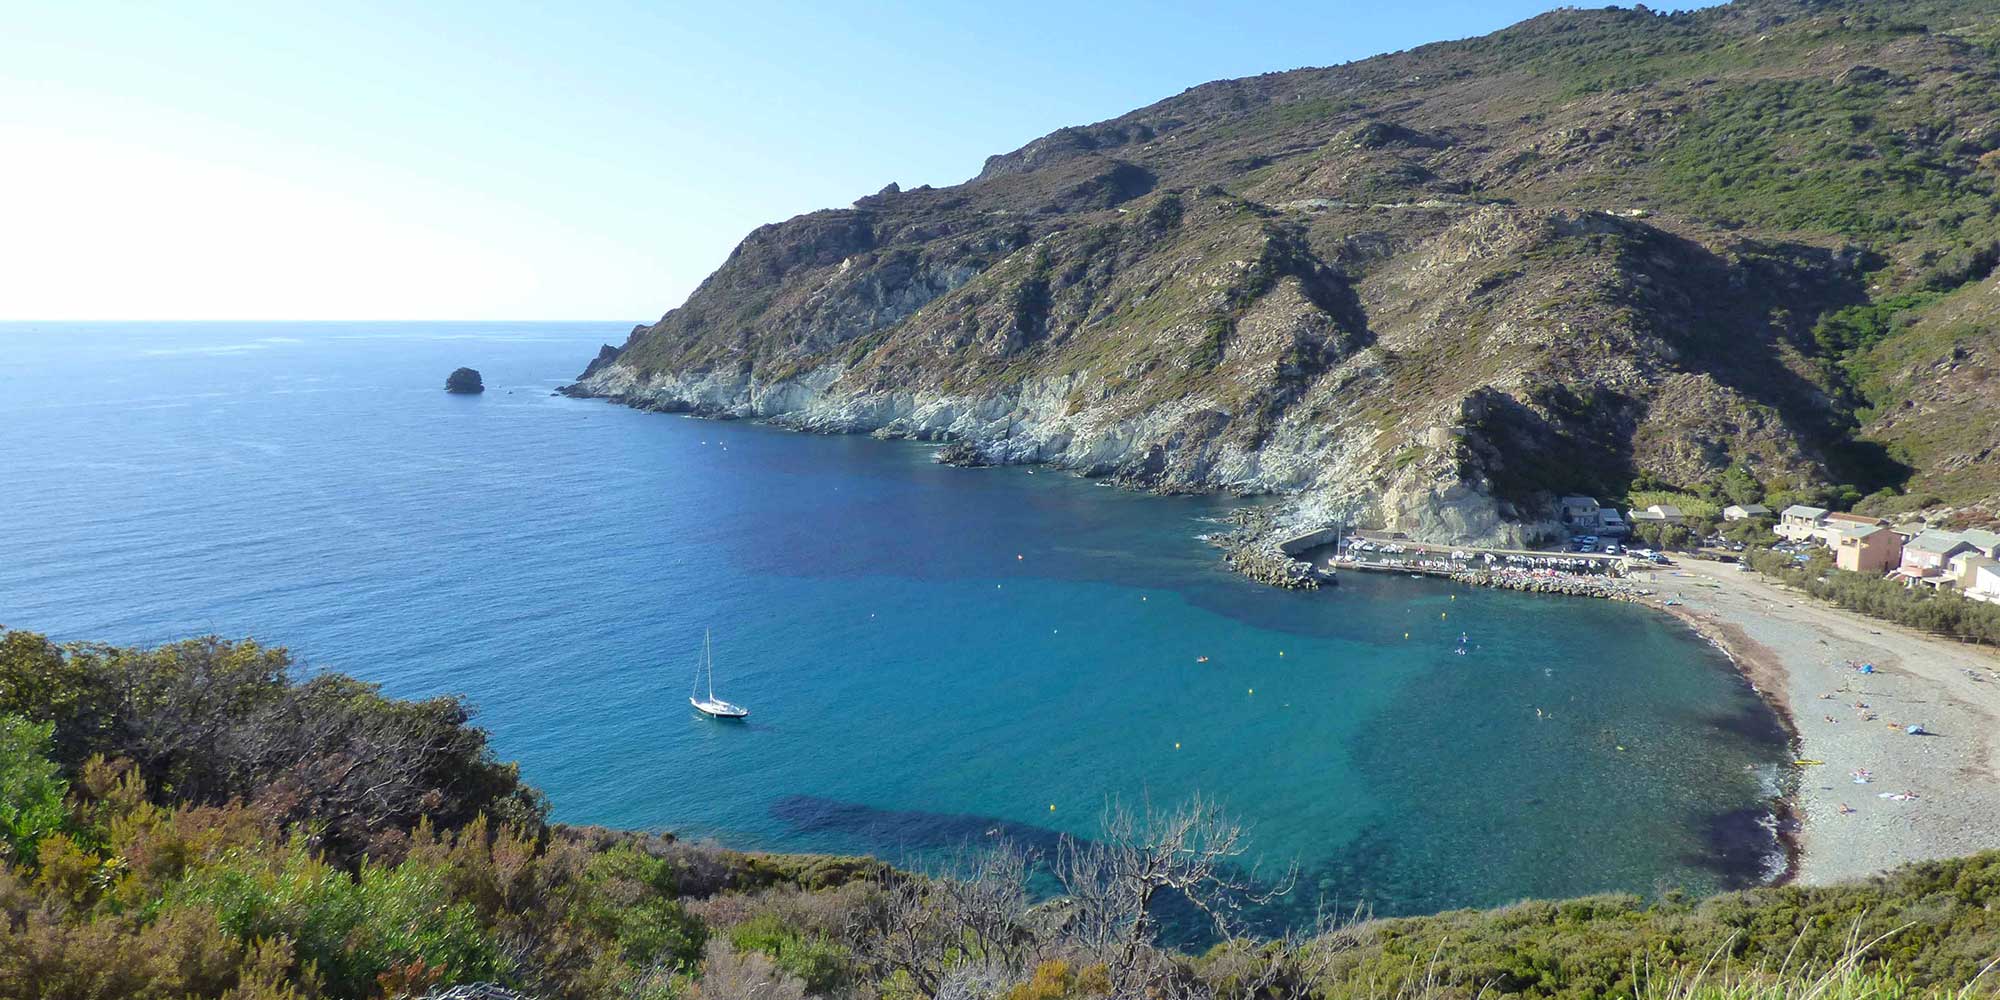 Location de vacances à Giottani dans le Cap Corse - Grande maison de famille pour 8 personnes.